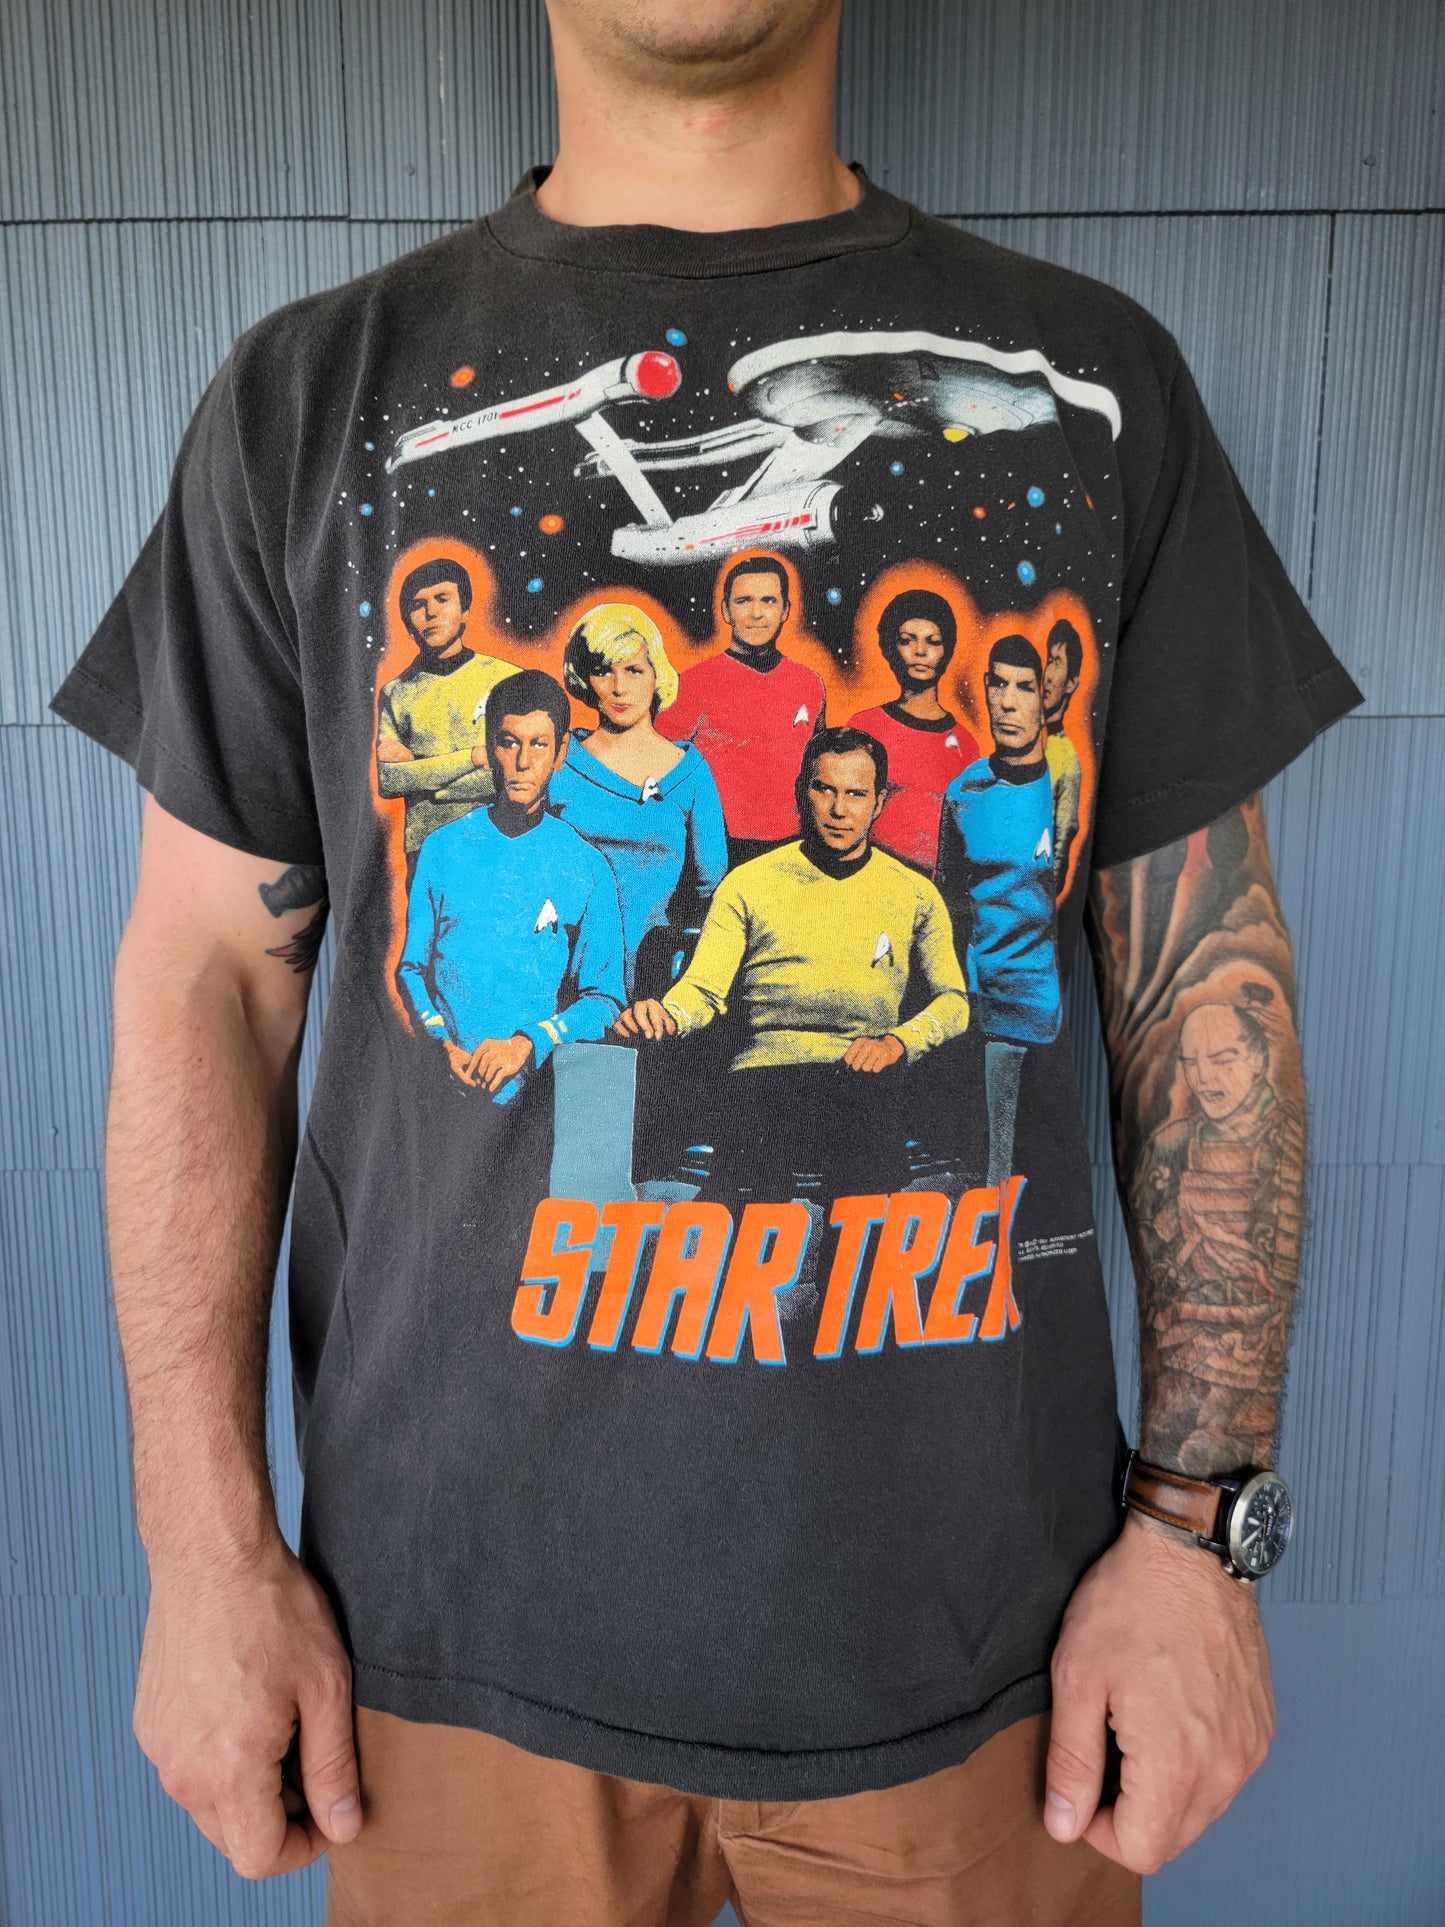 Star Trek, 1991